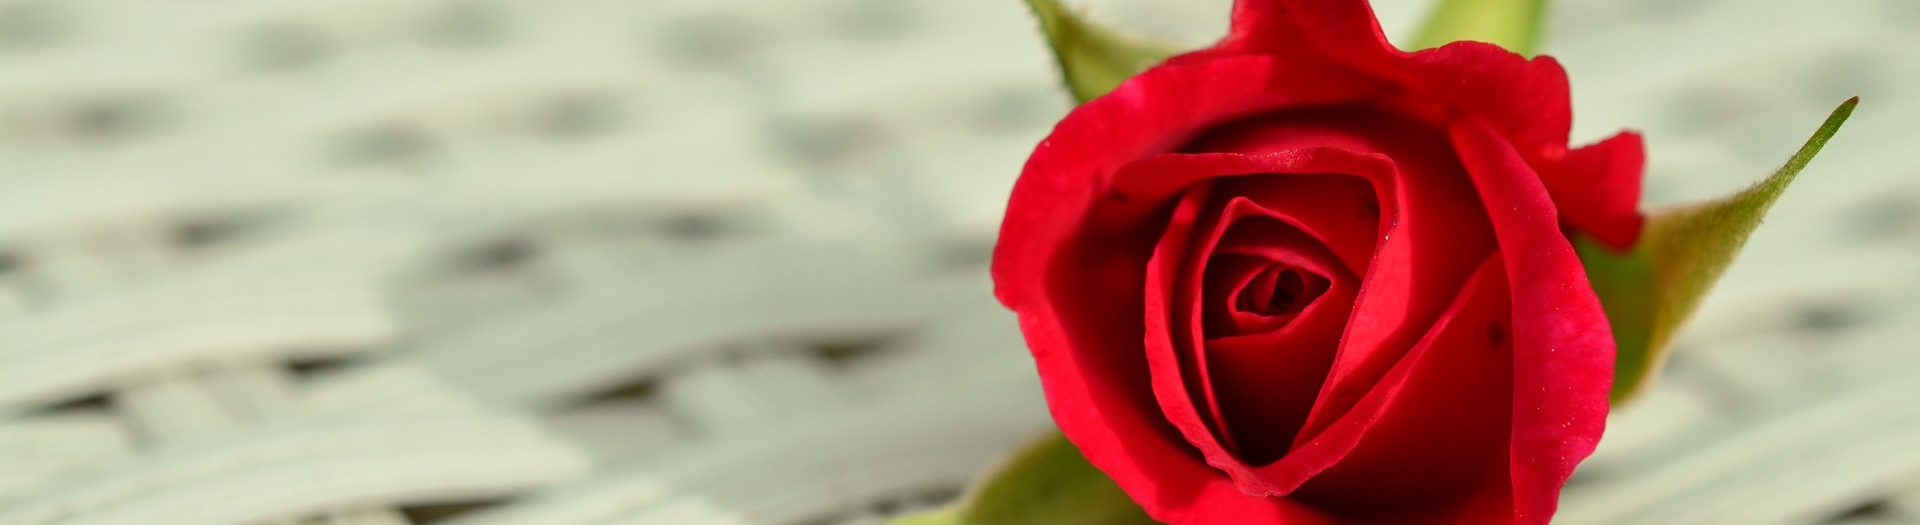 Kaunista oma koduaeda Põltsamaa Roosiaias kasvatatud roosidega